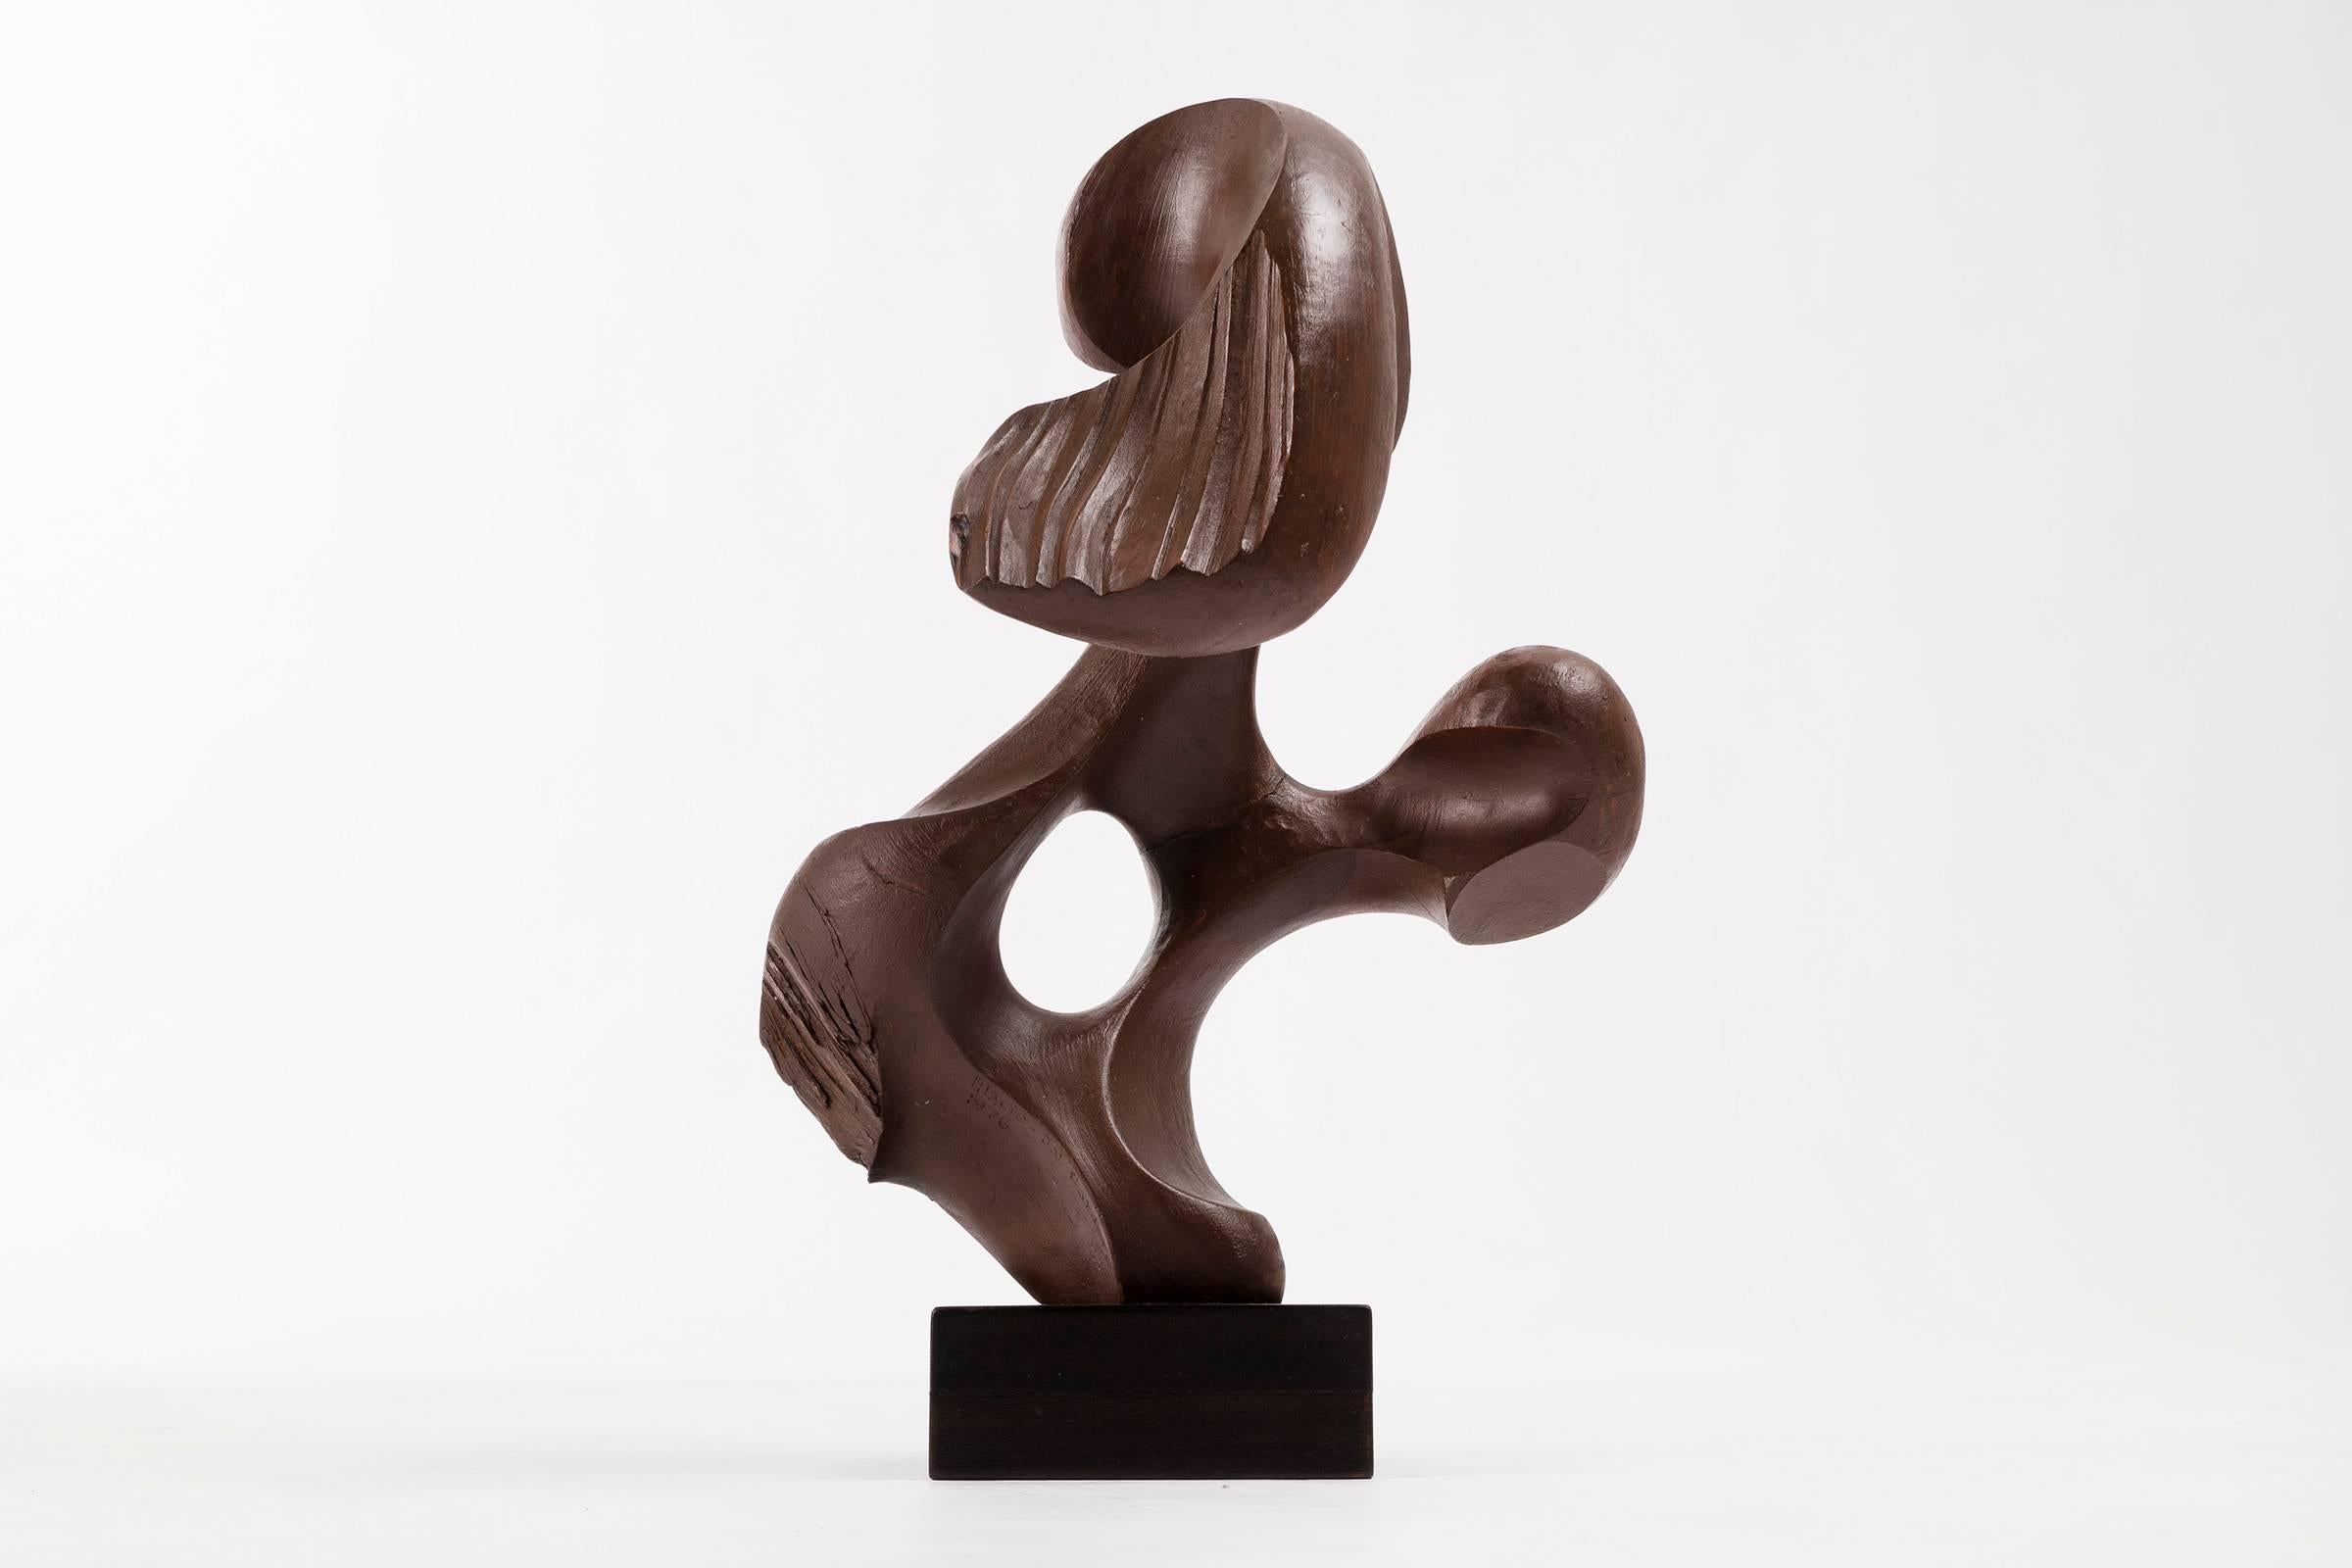 Mario Dal Fabbro sculpture no. 3
circa 1978

Multi-disciplinary artist Mario Dal Fabbro was born in Cappella Maggiore, Italy in 1913.
He trained in his family's furniture design shop prior to attending both the R. Superior Institute for